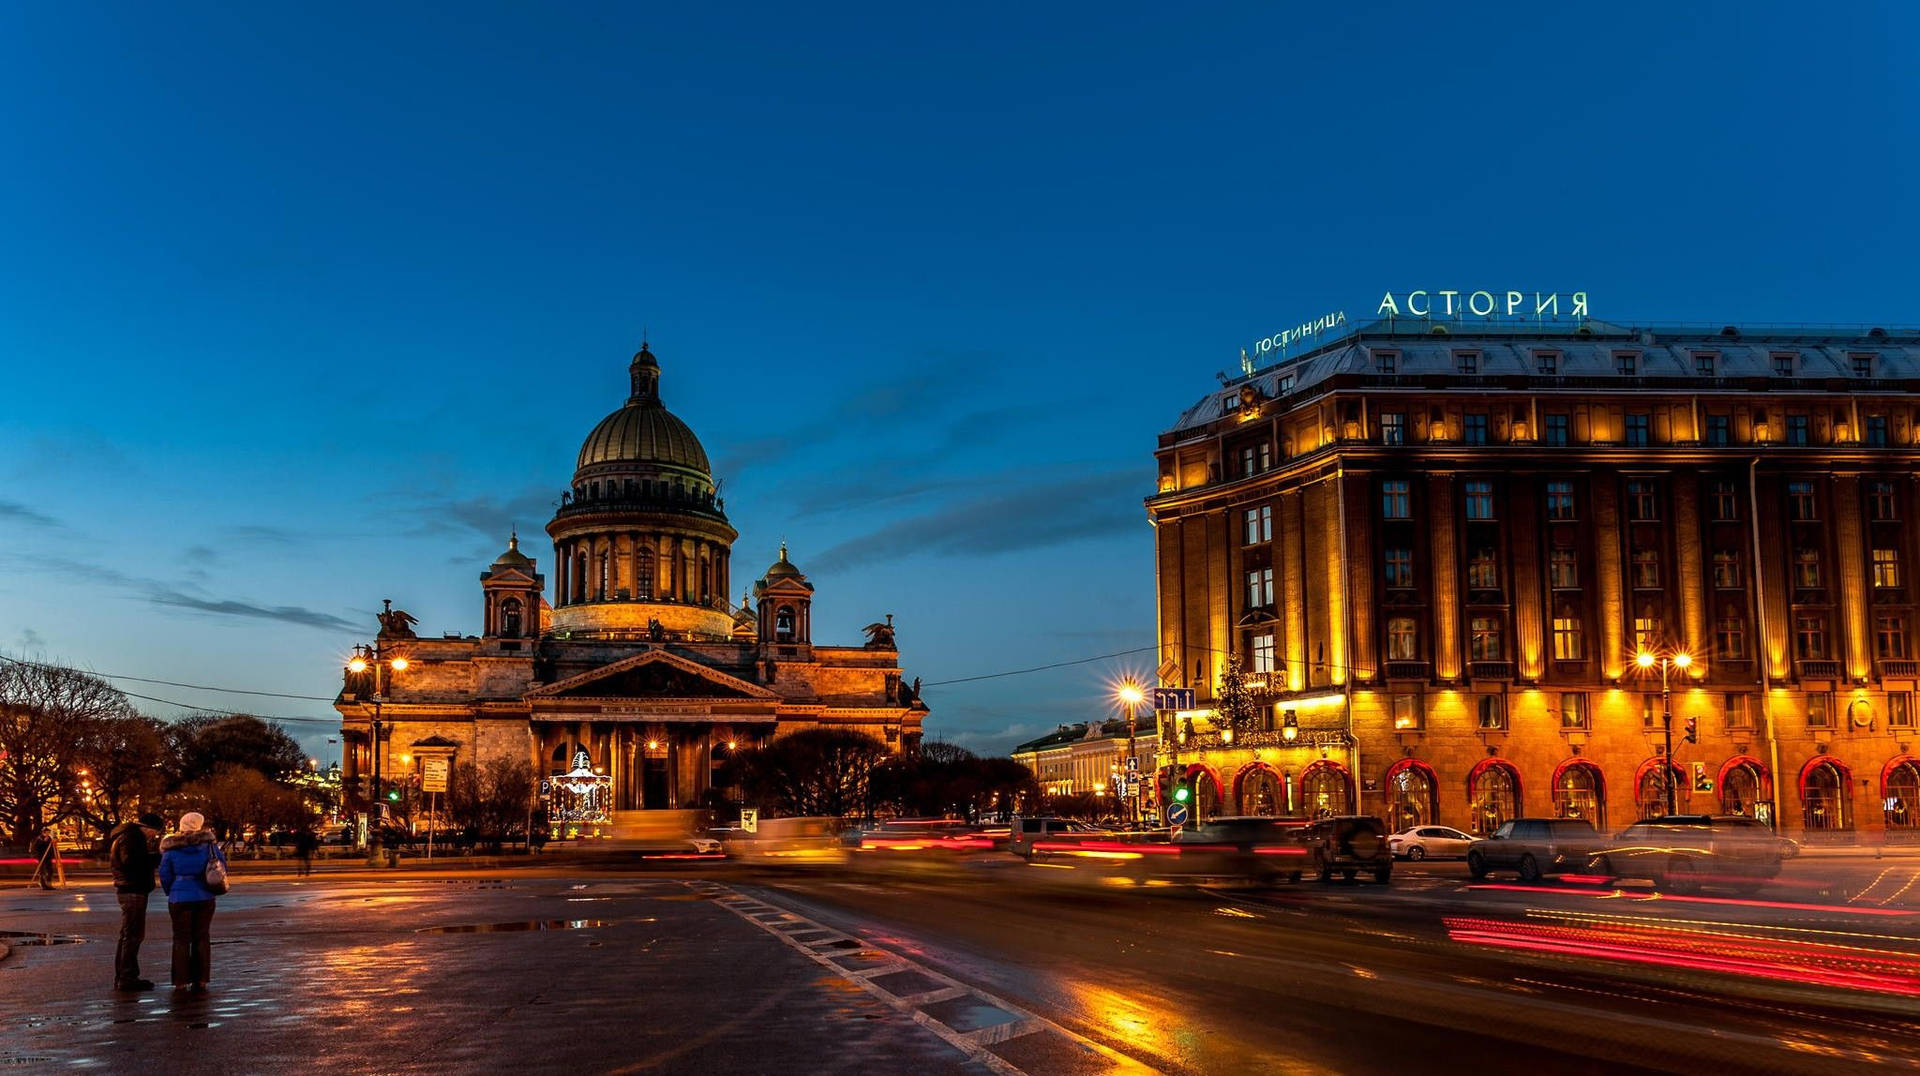 Astoriya Building In St. Petersburg